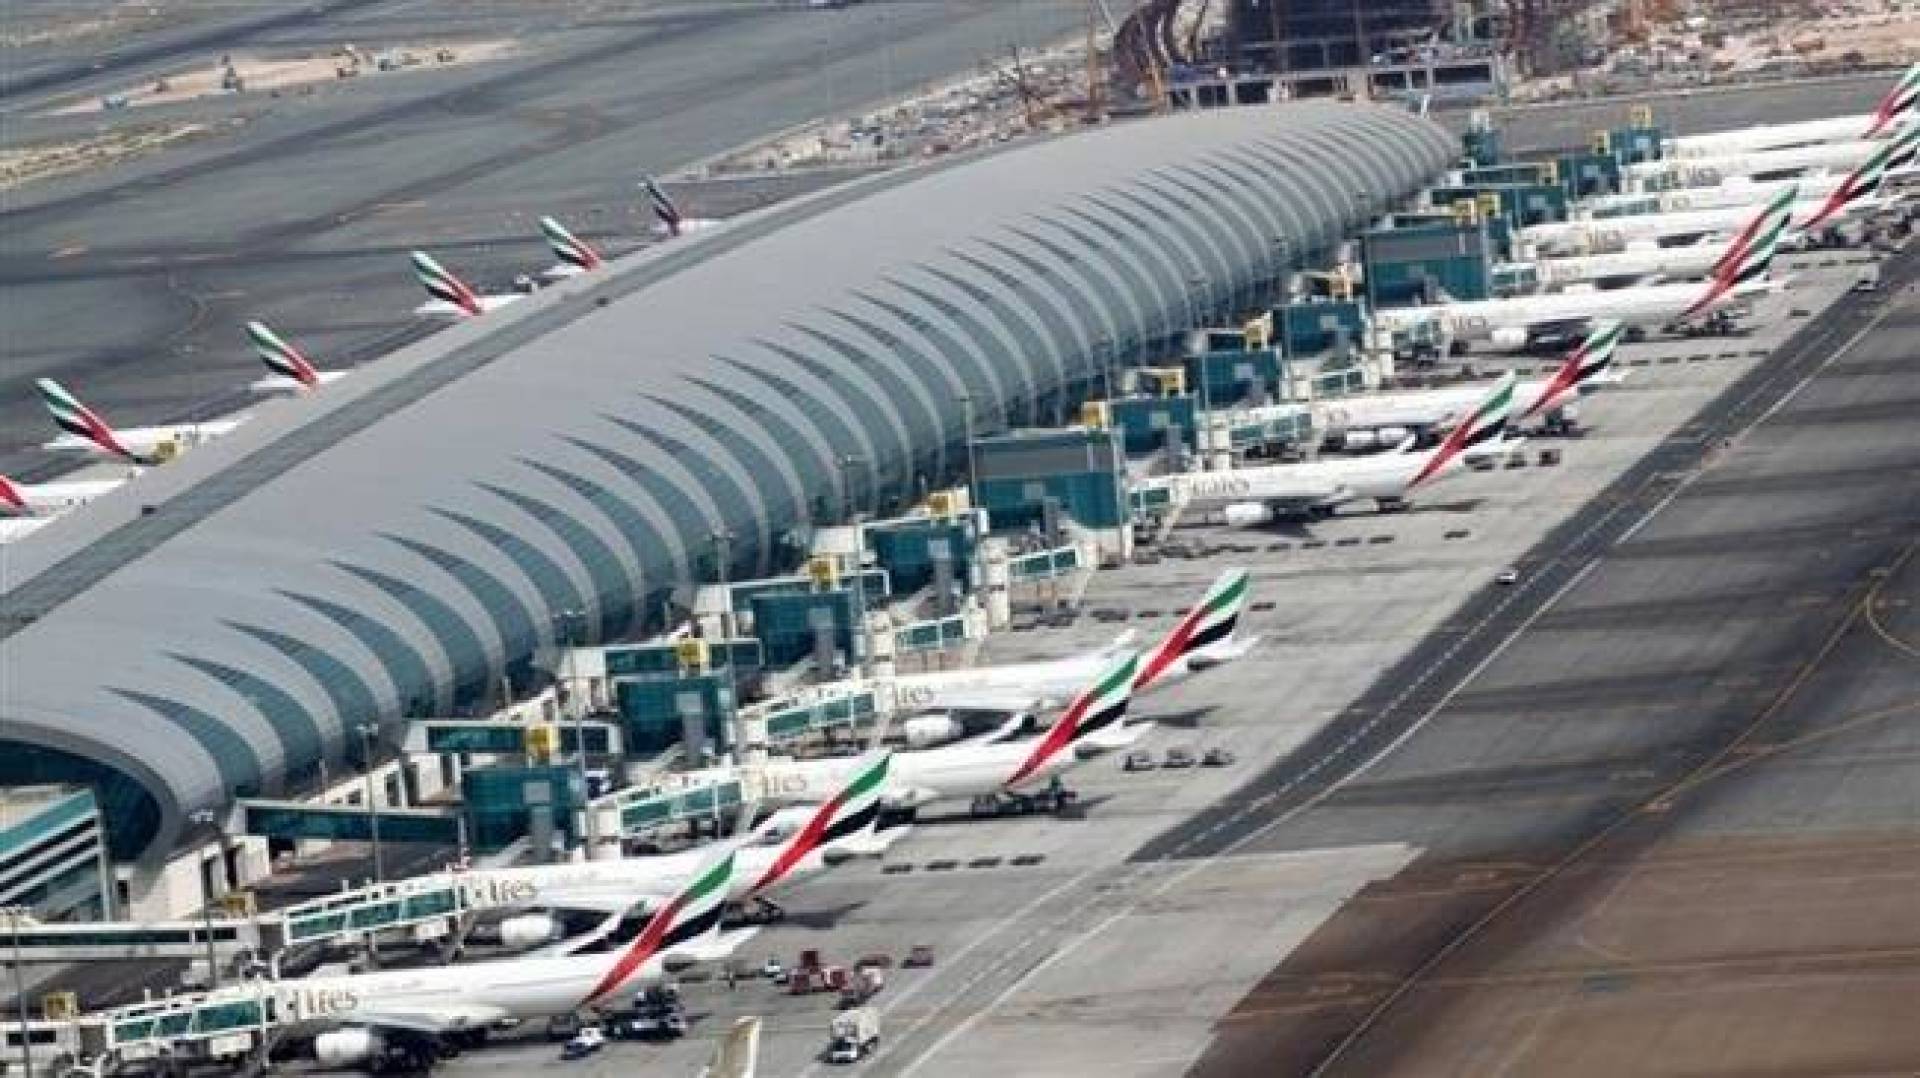 دبي تستضيف المسافرين العالقين وتوفر لهم الإقامة الملائمة في فنادقها لحين إتمام إجراءاتهم